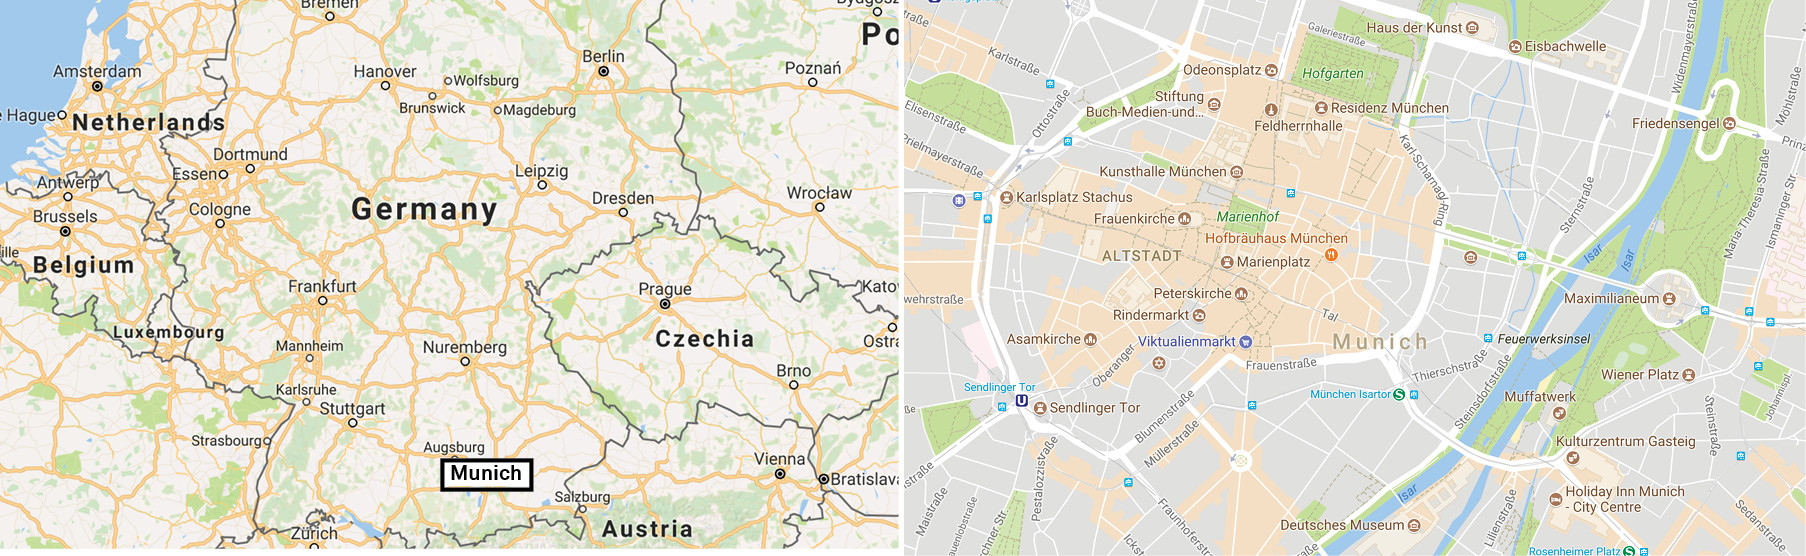 Map-Germany-Munich